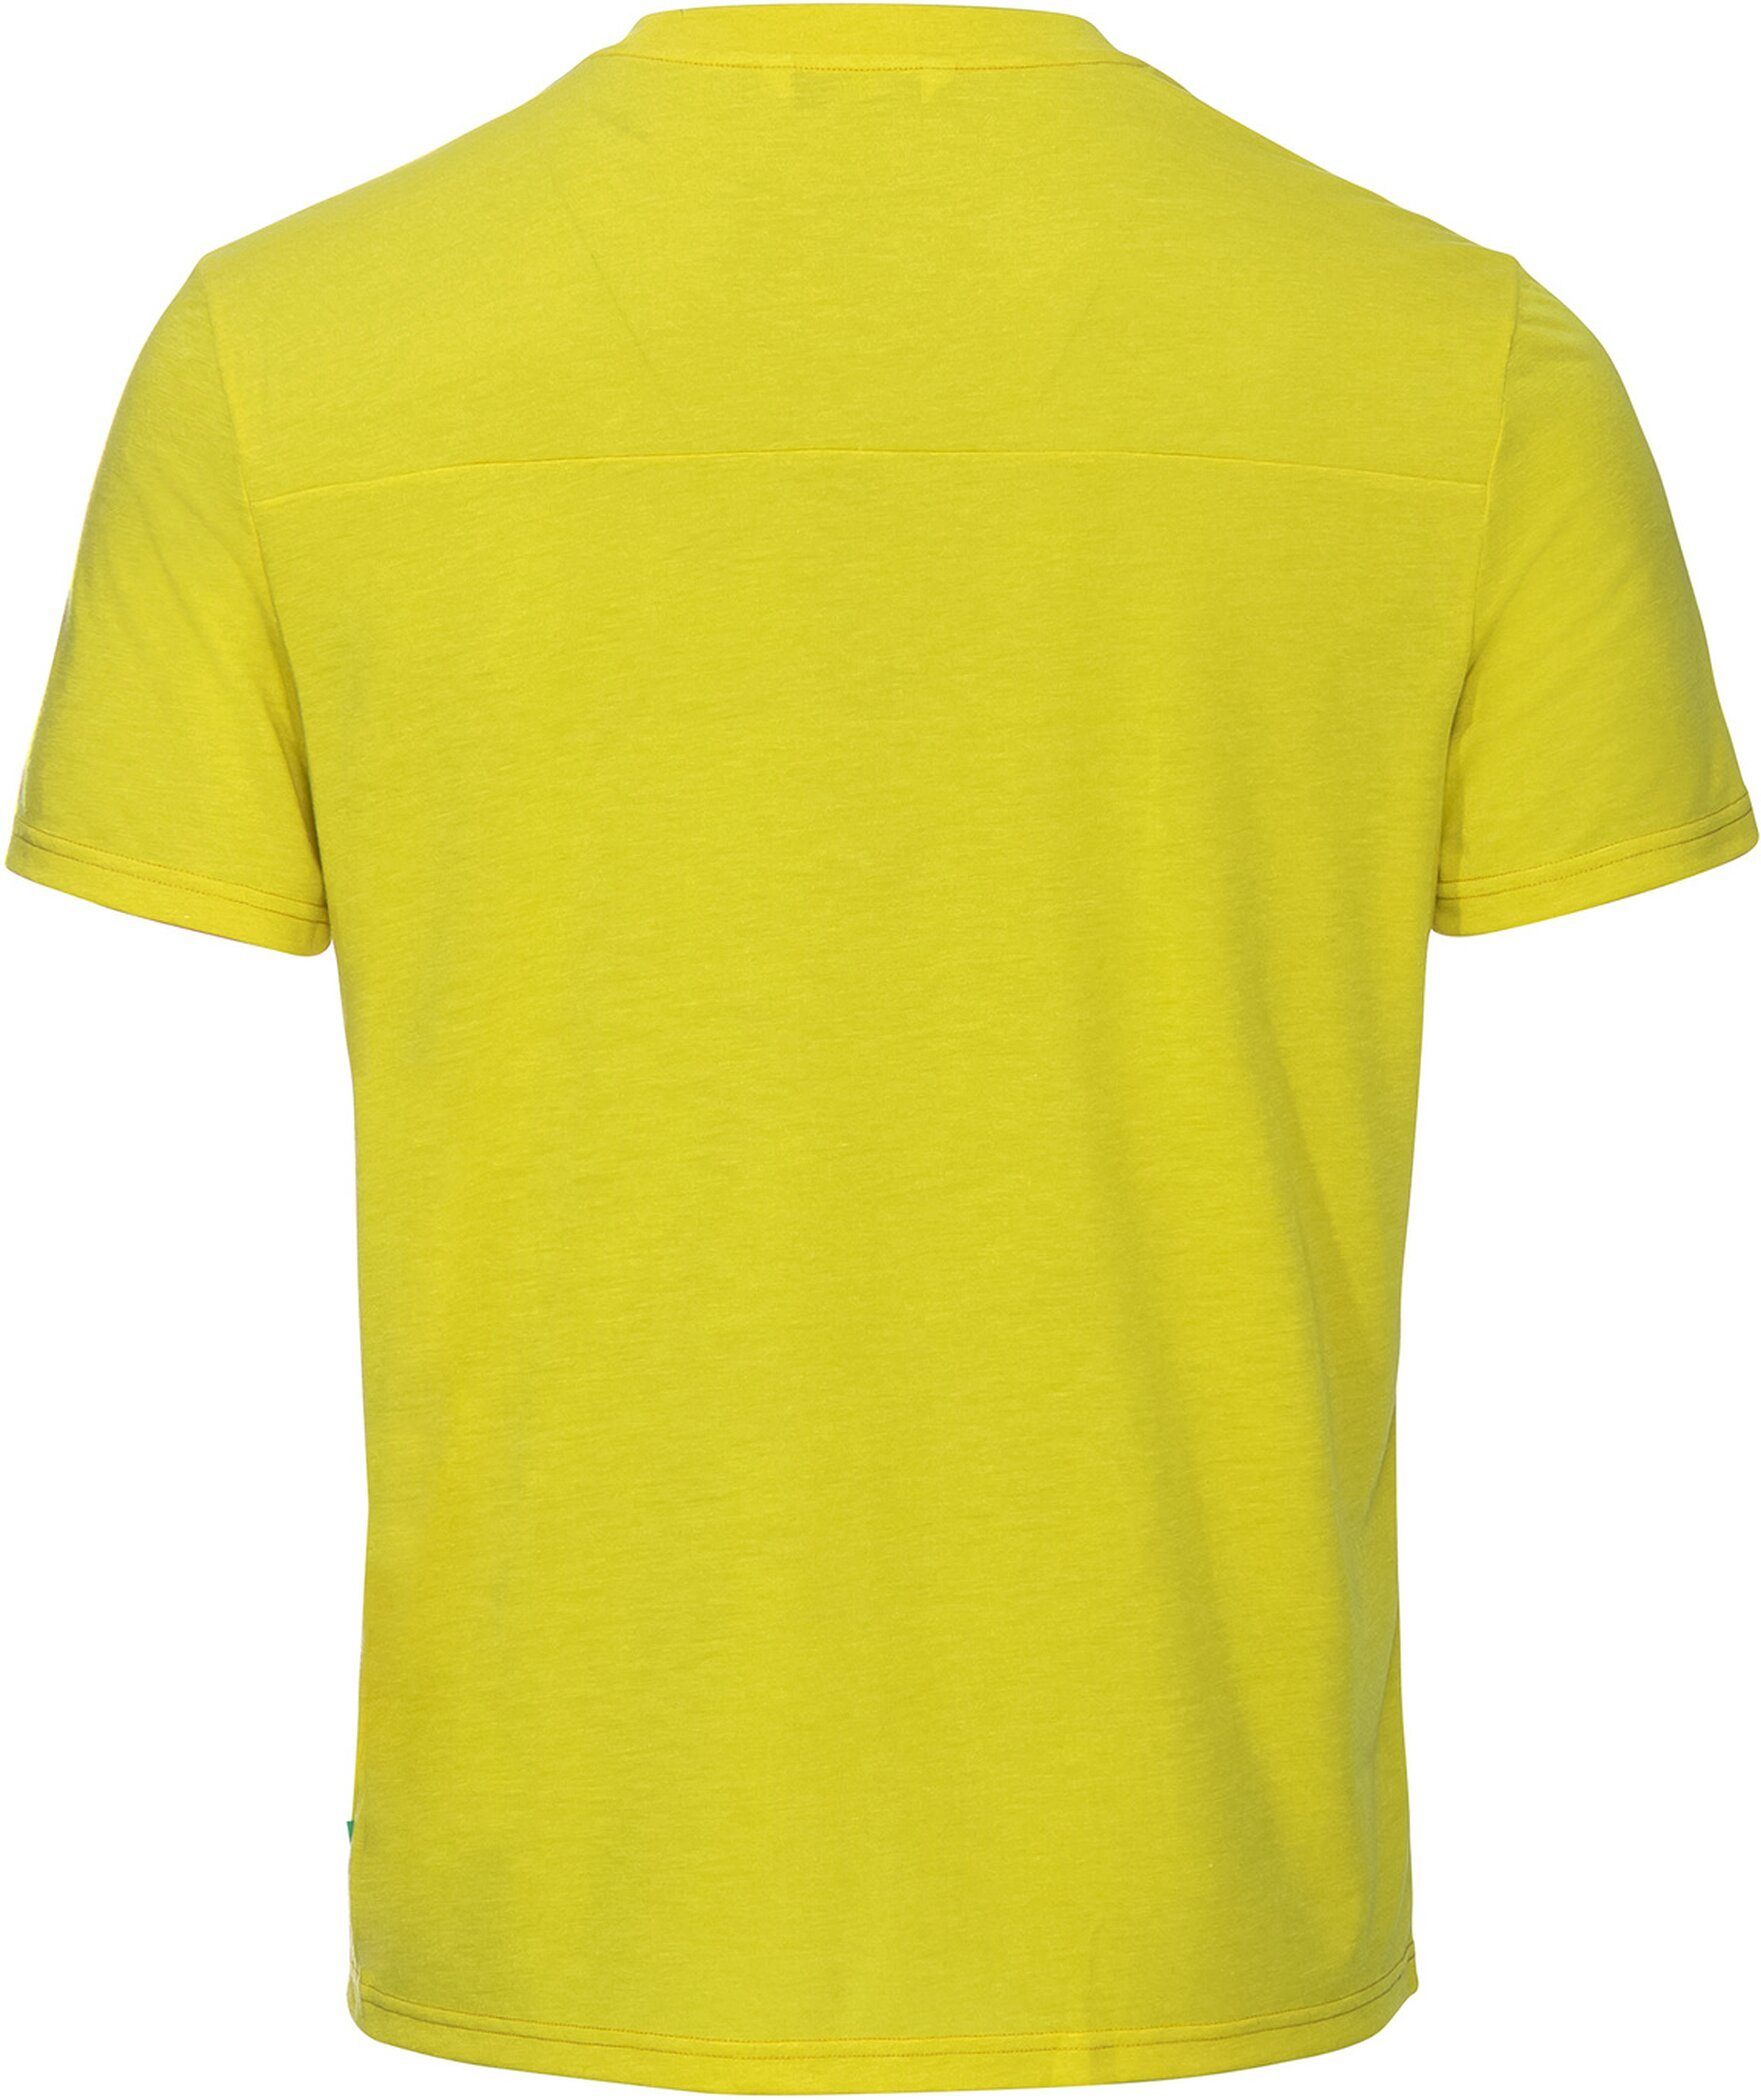 green III Tekoa VAUDE Funktionsshirt bright T-Shirt Me